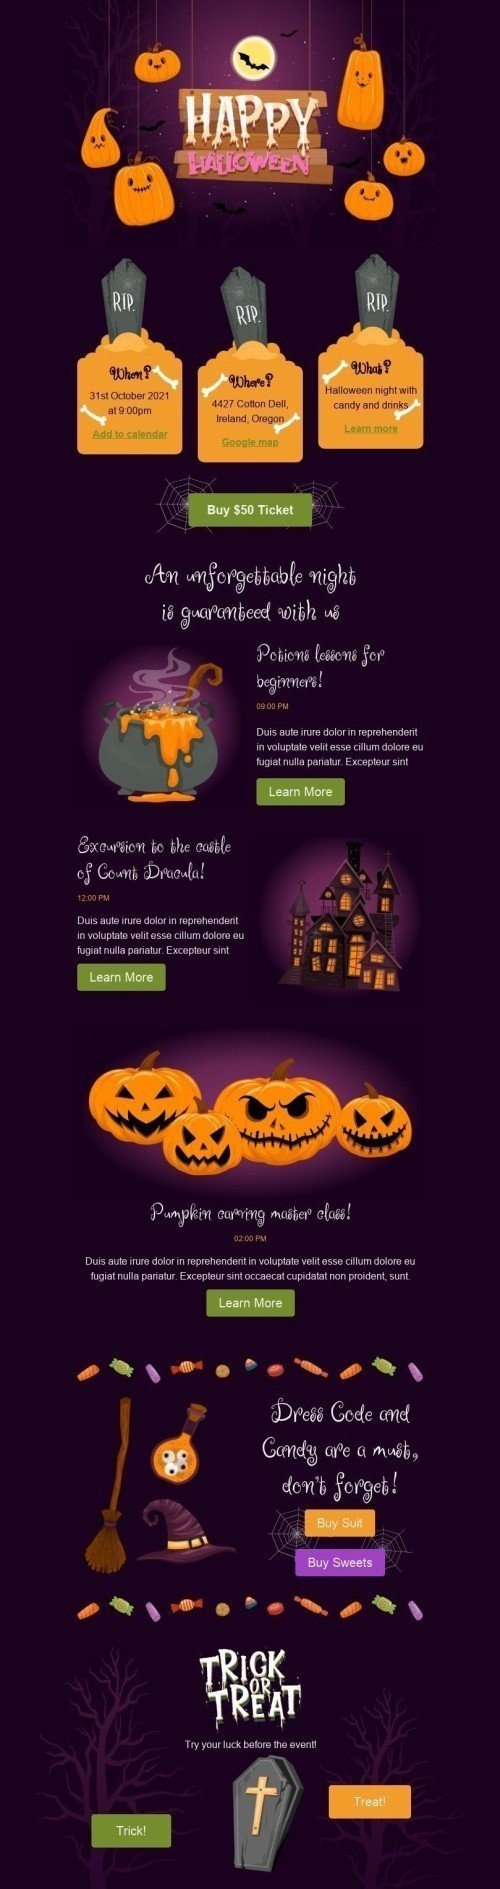 Halloween Email Template «Halloween night» for Hobbies industry desktop view